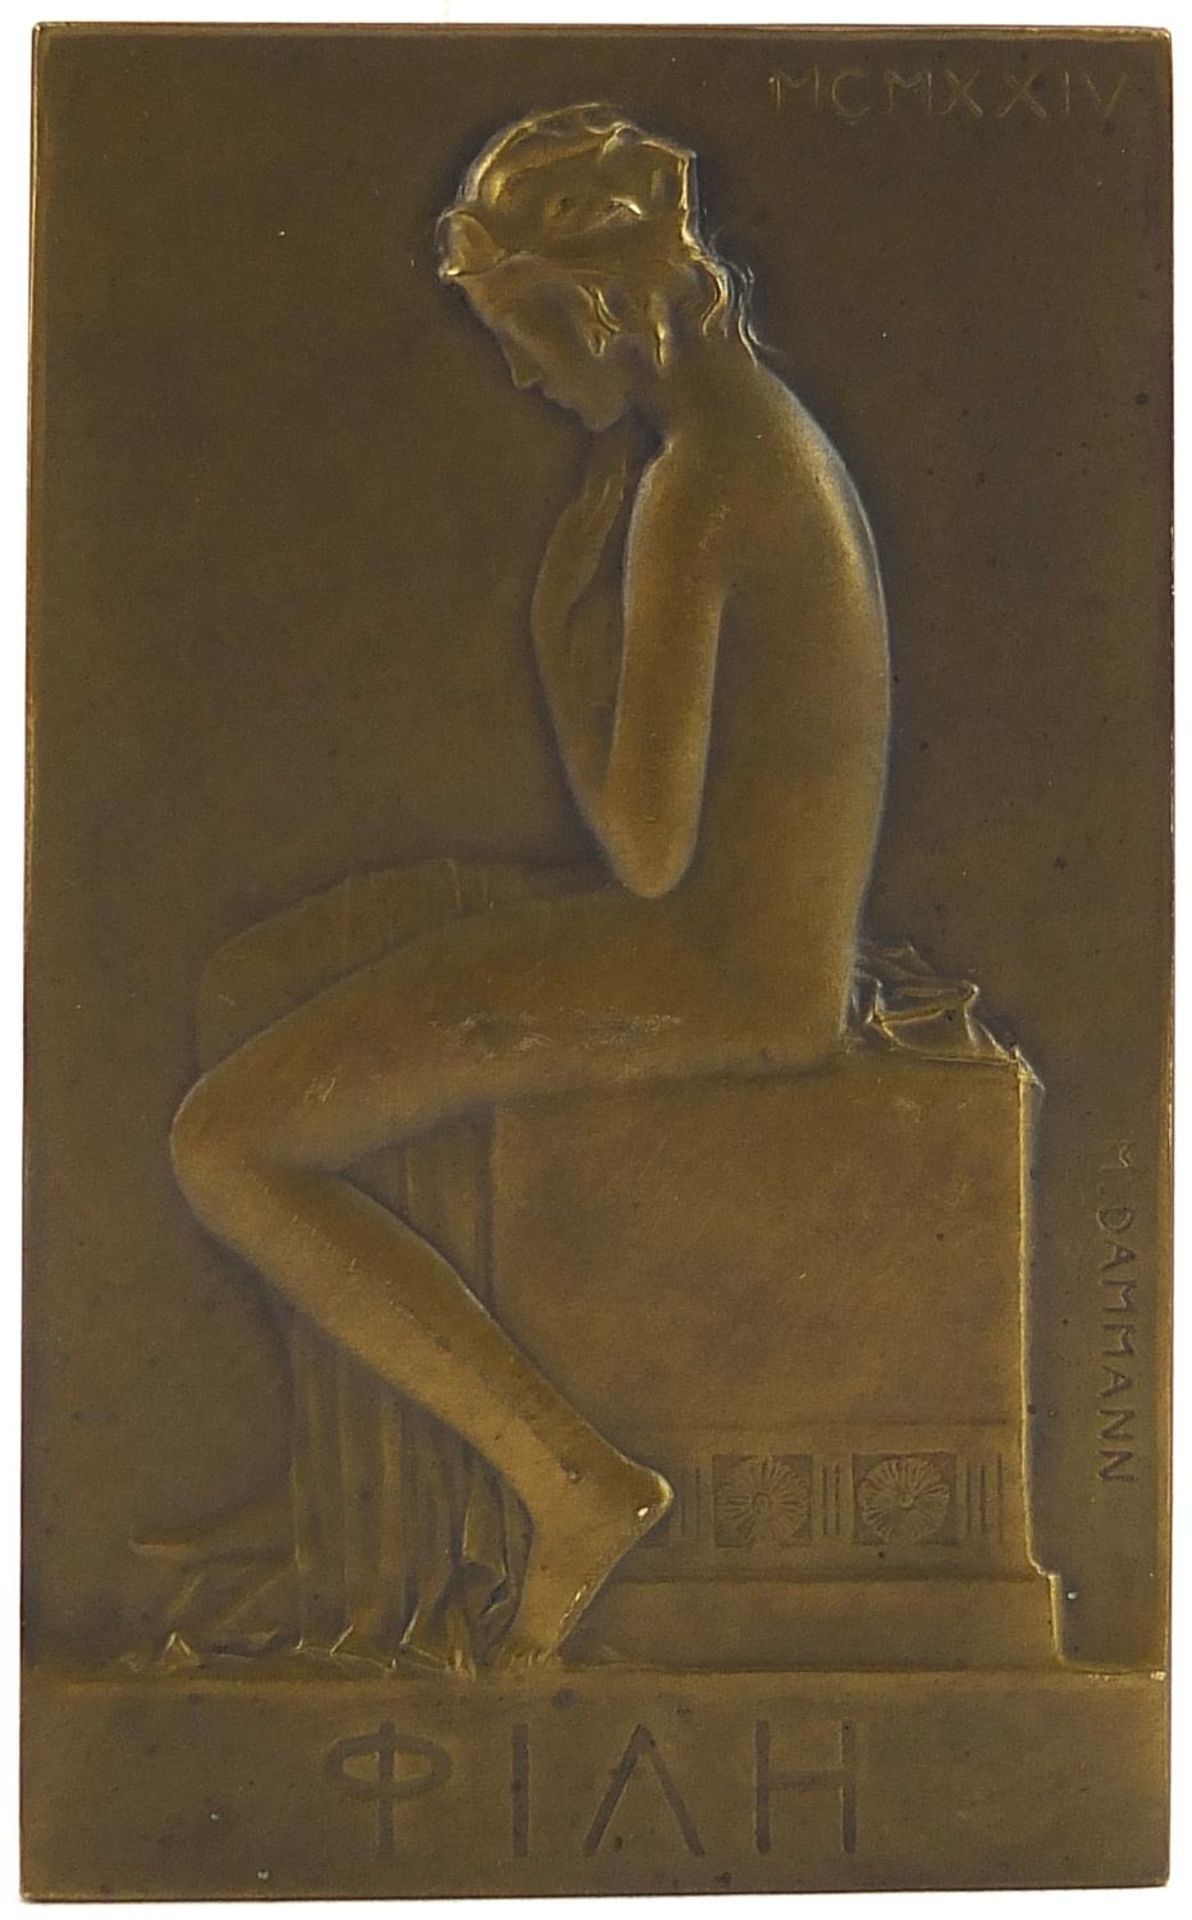 Hans Dammann, German Art Nouveau bronze plaque of a young female titled Piah, dated 1924, 9cm x 5.